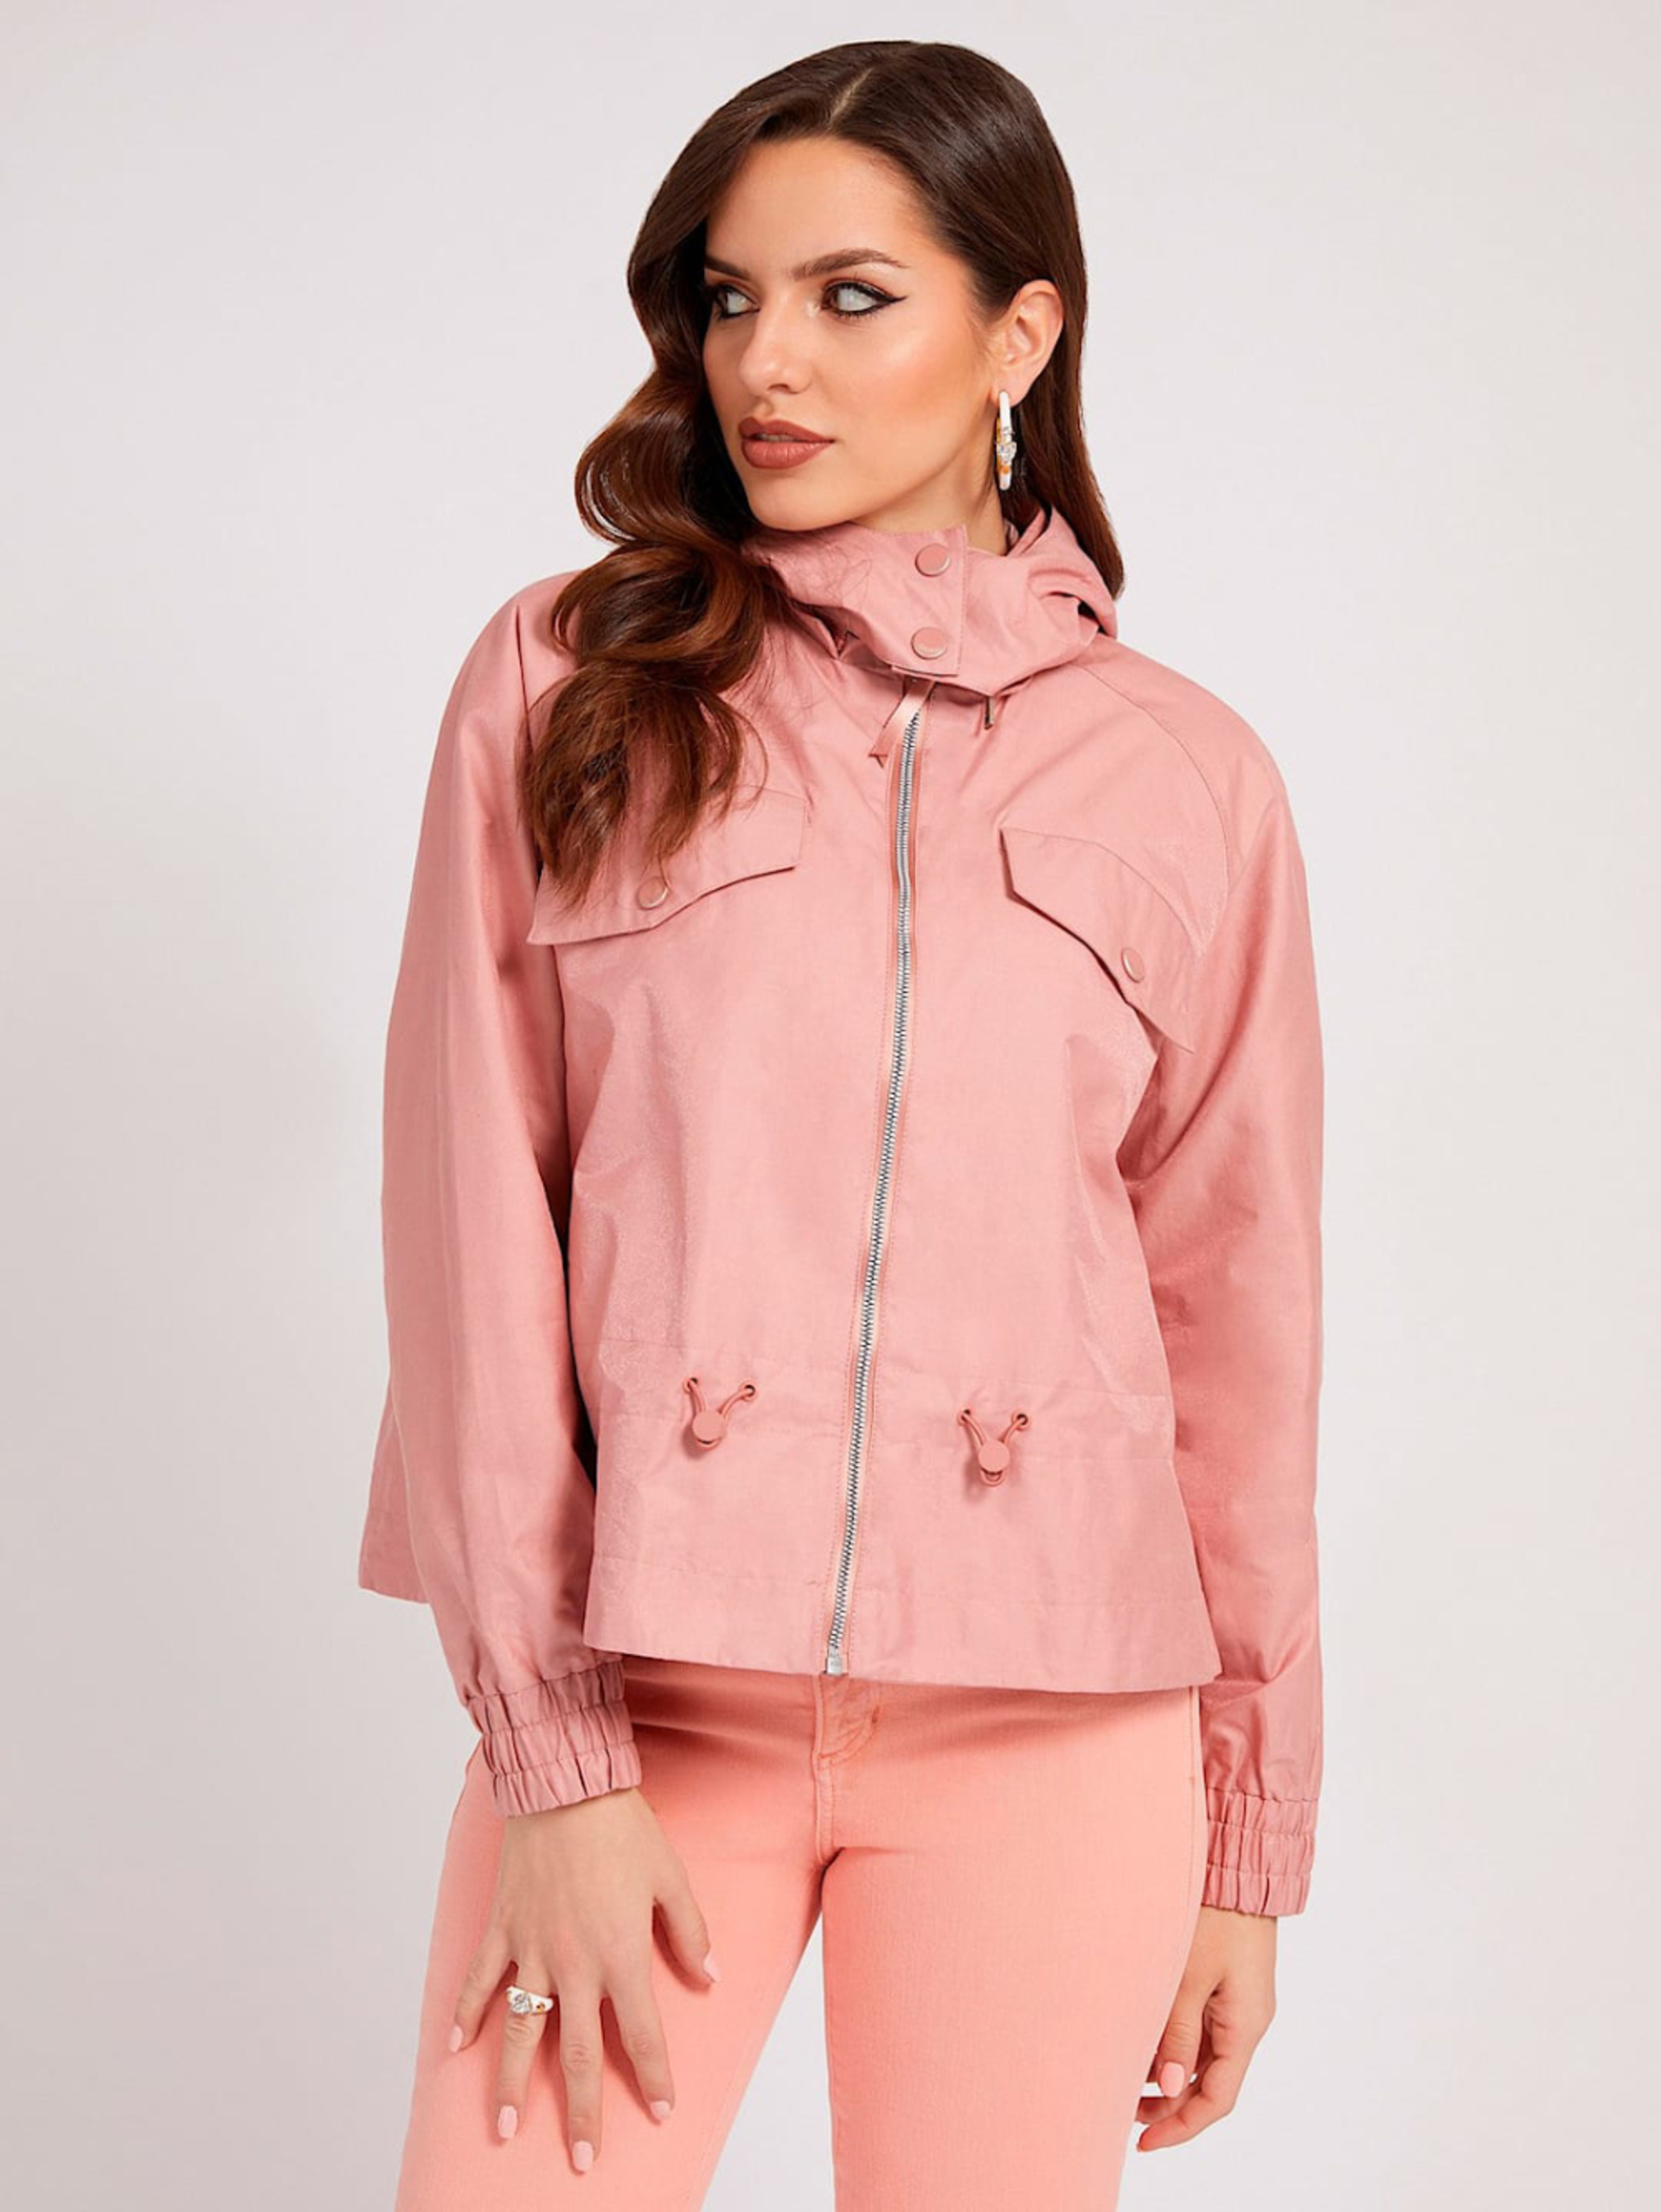 Guess dámská růžová bunda